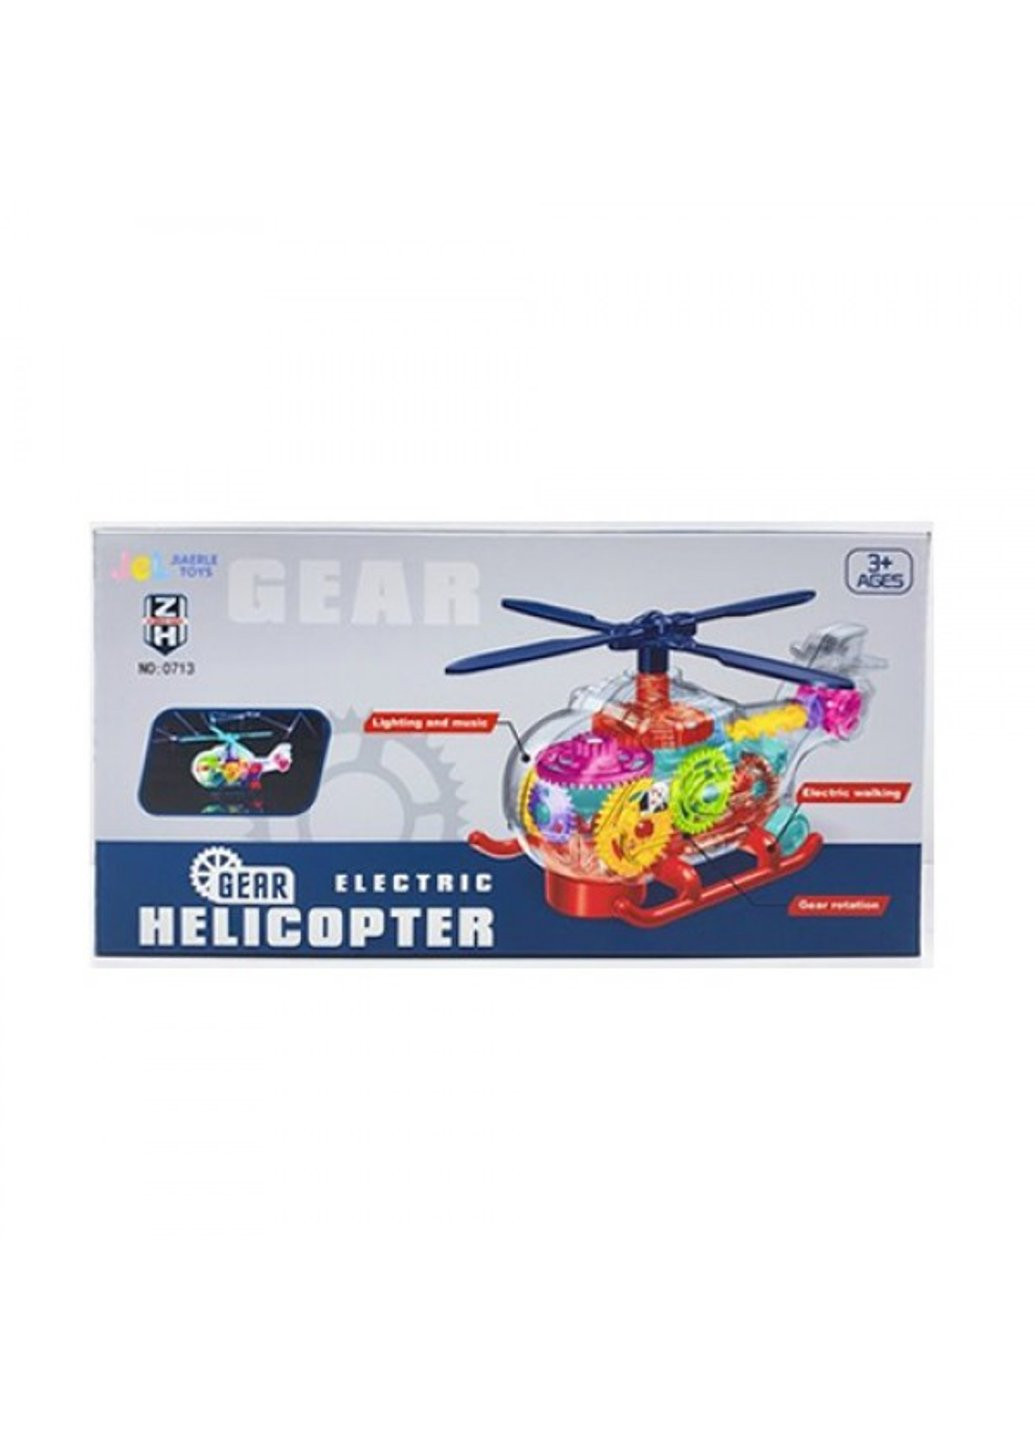 Вертолет игровой B-0713 18 см Power (254783161)